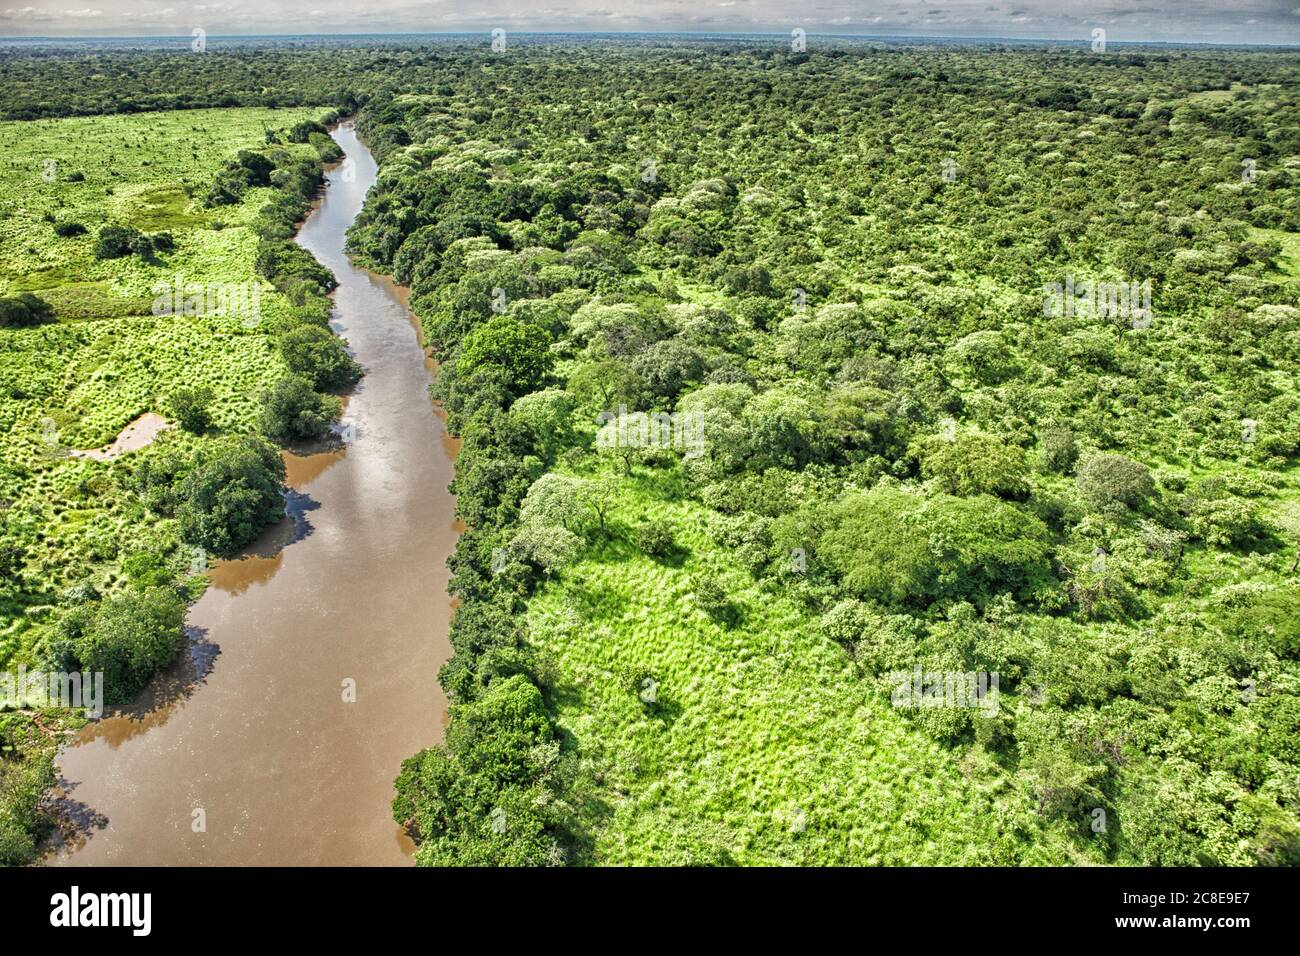 République démocratique du Congo, vue aérienne de la rivière Garamba qui traverse la savane verte dans le parc national de Garamba Banque D'Images